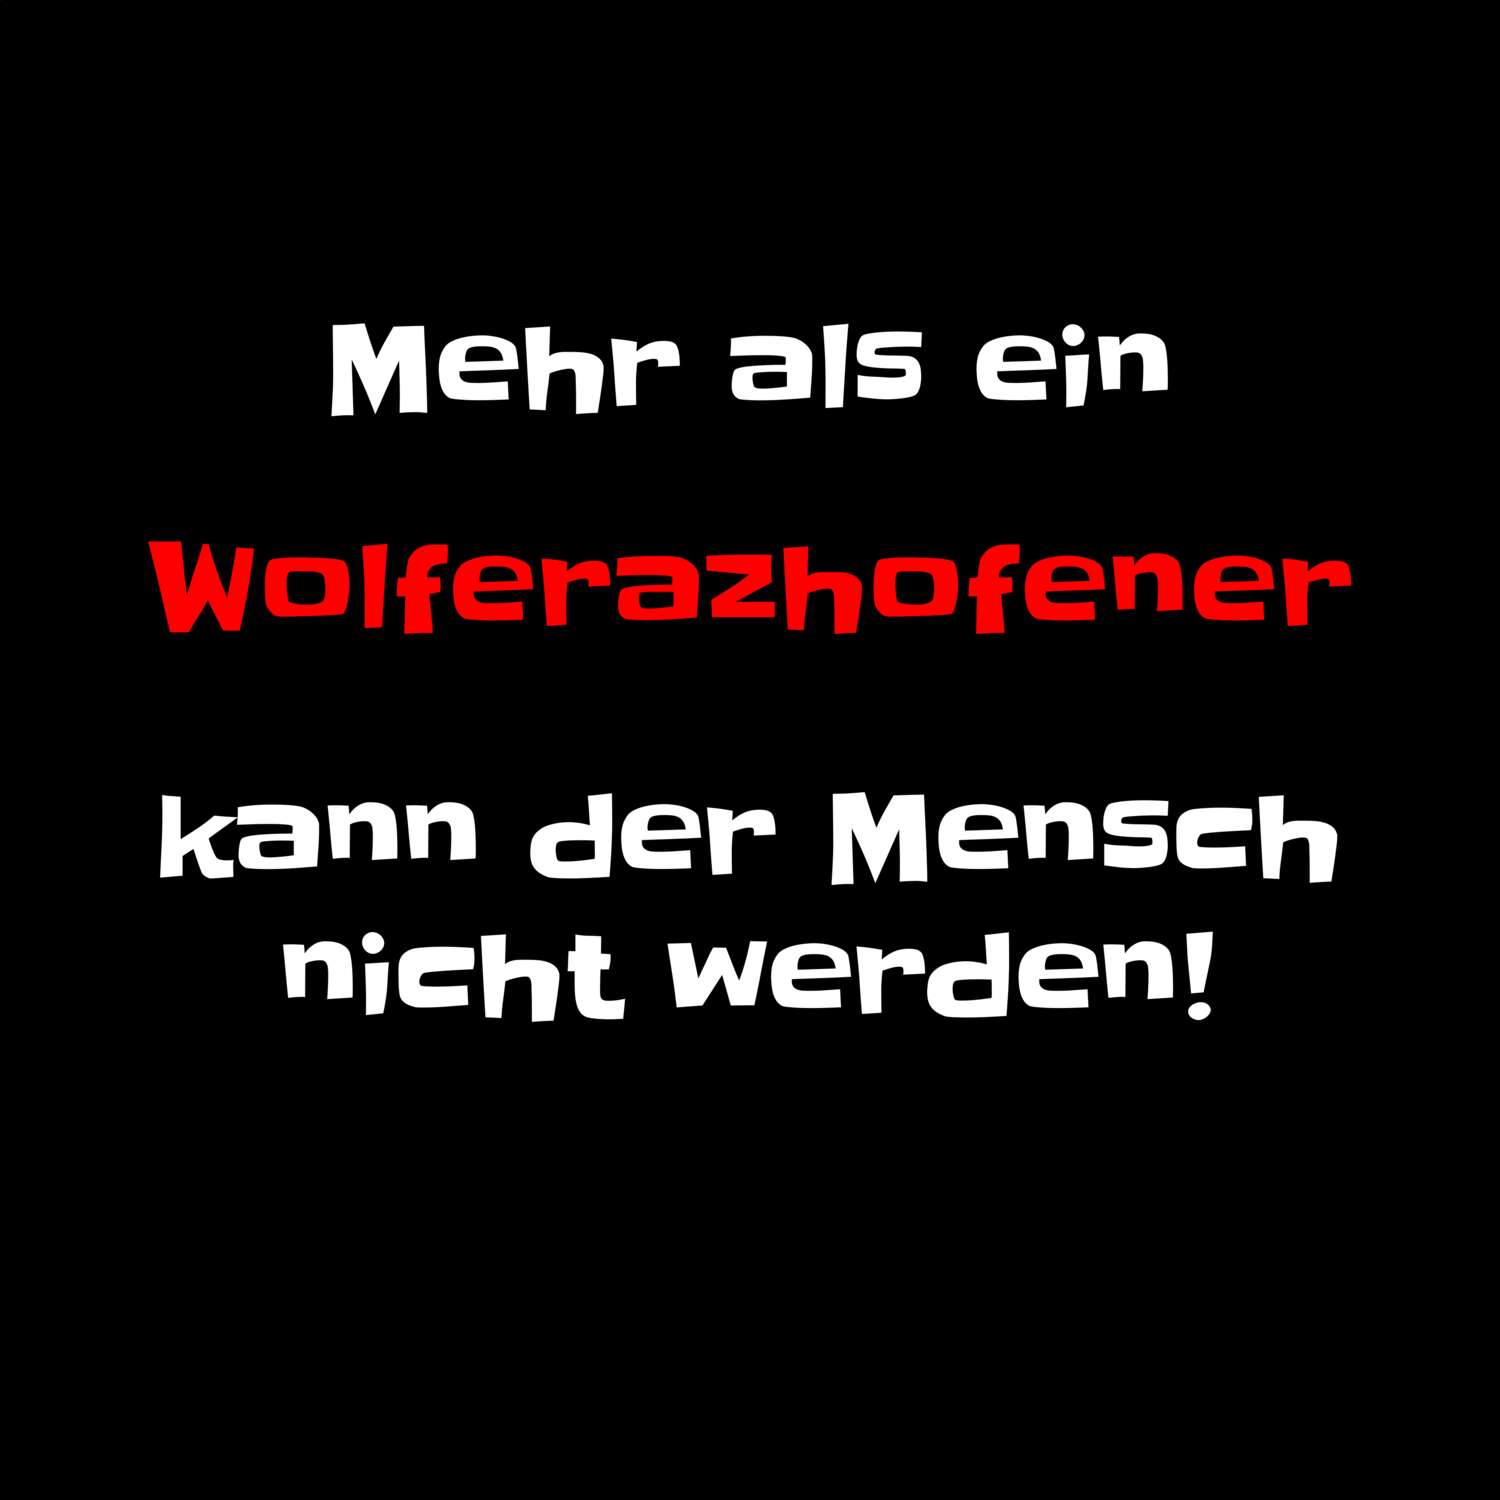 Wolferazhofen T-Shirt »Mehr als ein«